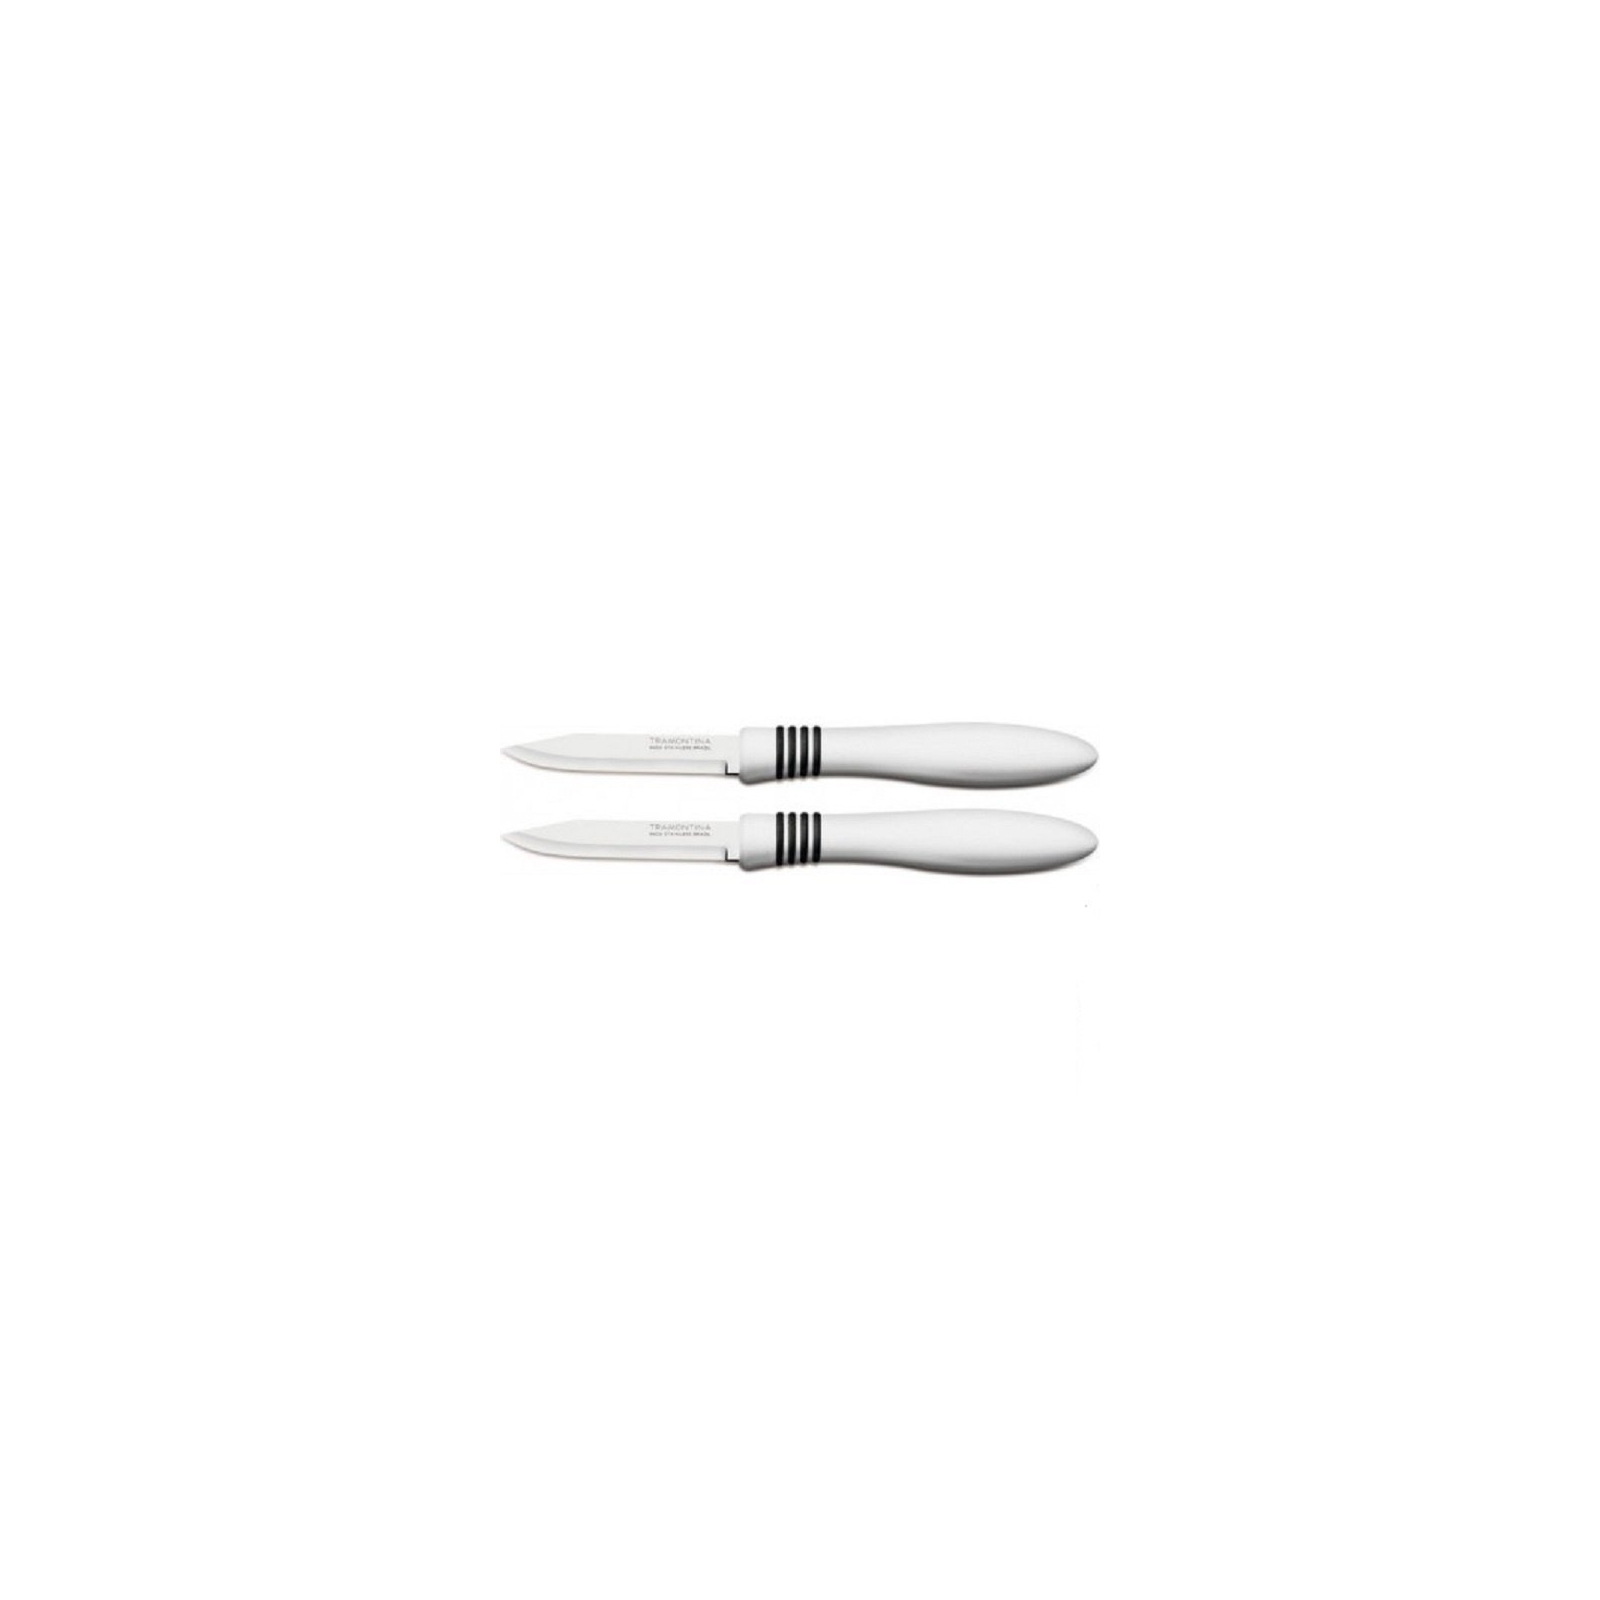 Набор ножей Tramontina COR & COR для овощей 2шт 76 мм Red (23461/273) изображение 2